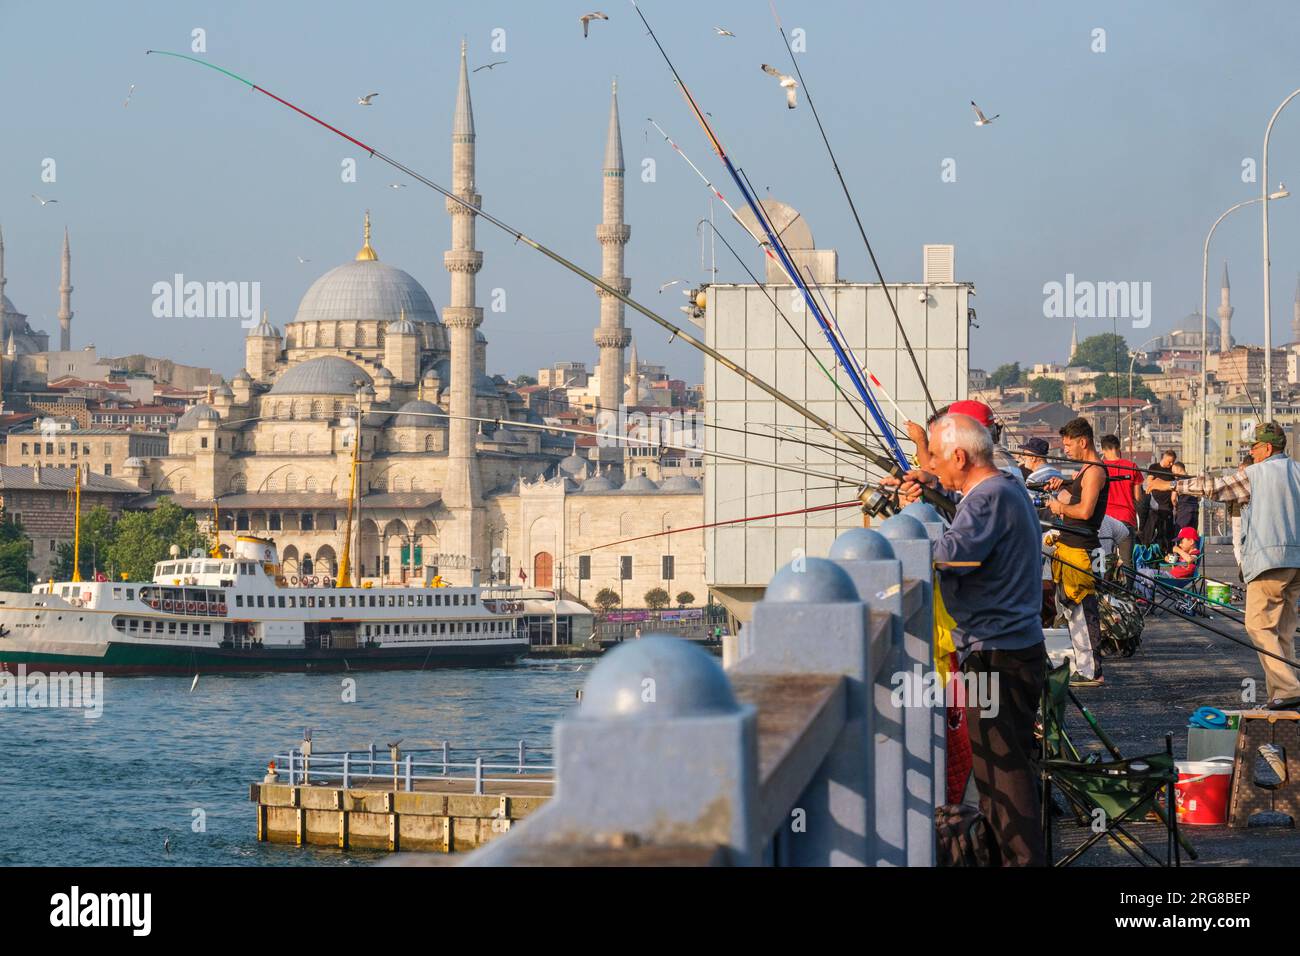 Istanbul, Turchia, Türkiye. Pescatori sul ponte Galata. La nuova Moschea (Yeni Camii, completata nel 1663) in background a sinistra. Foto Stock